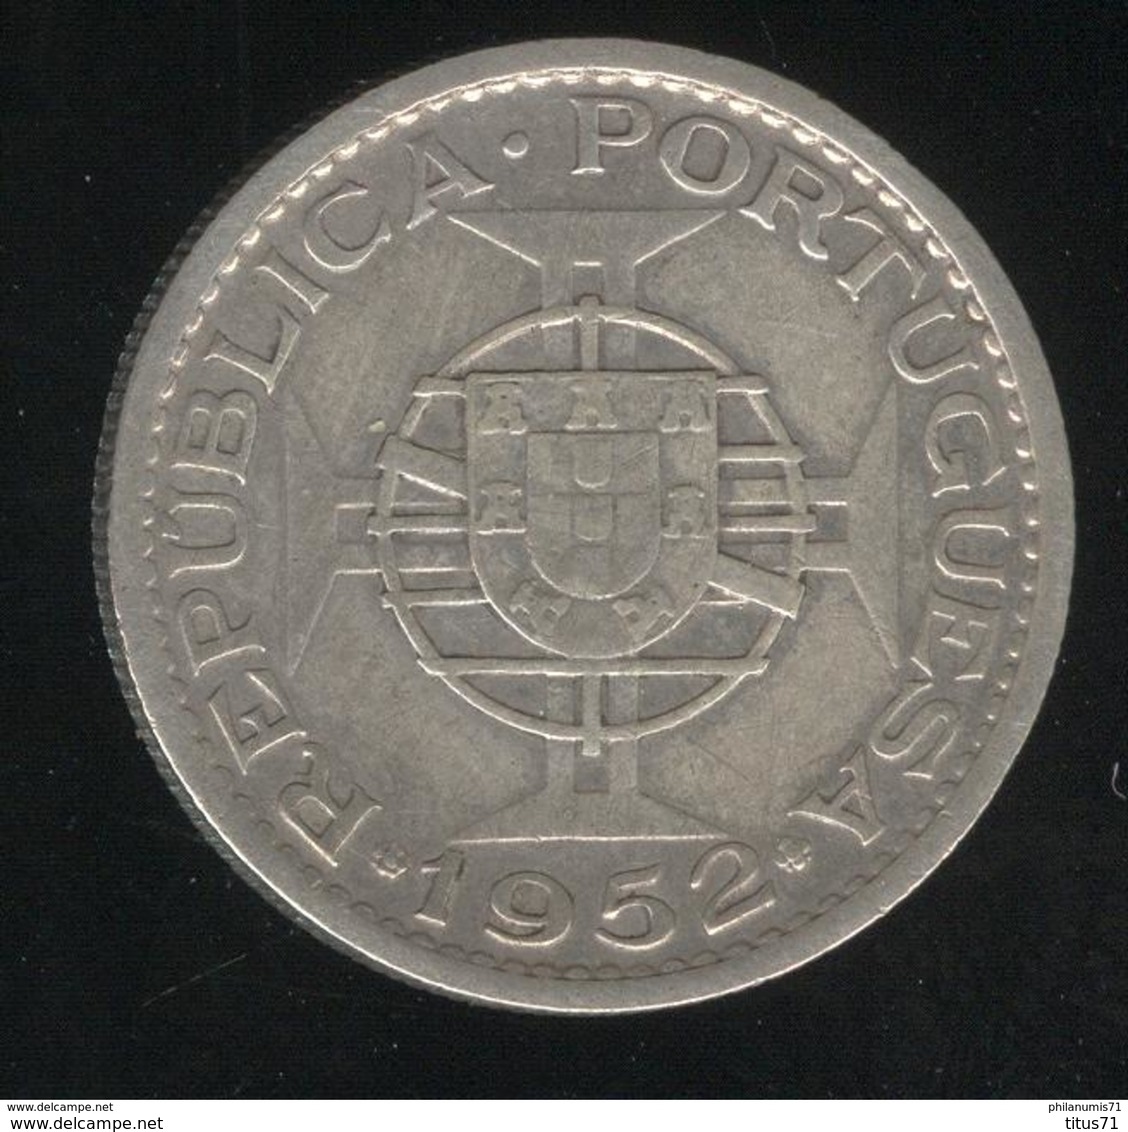 10 Escudos Angola 1952 - Colonie Portugaise / Portuguese Colony - TTB - Portogallo